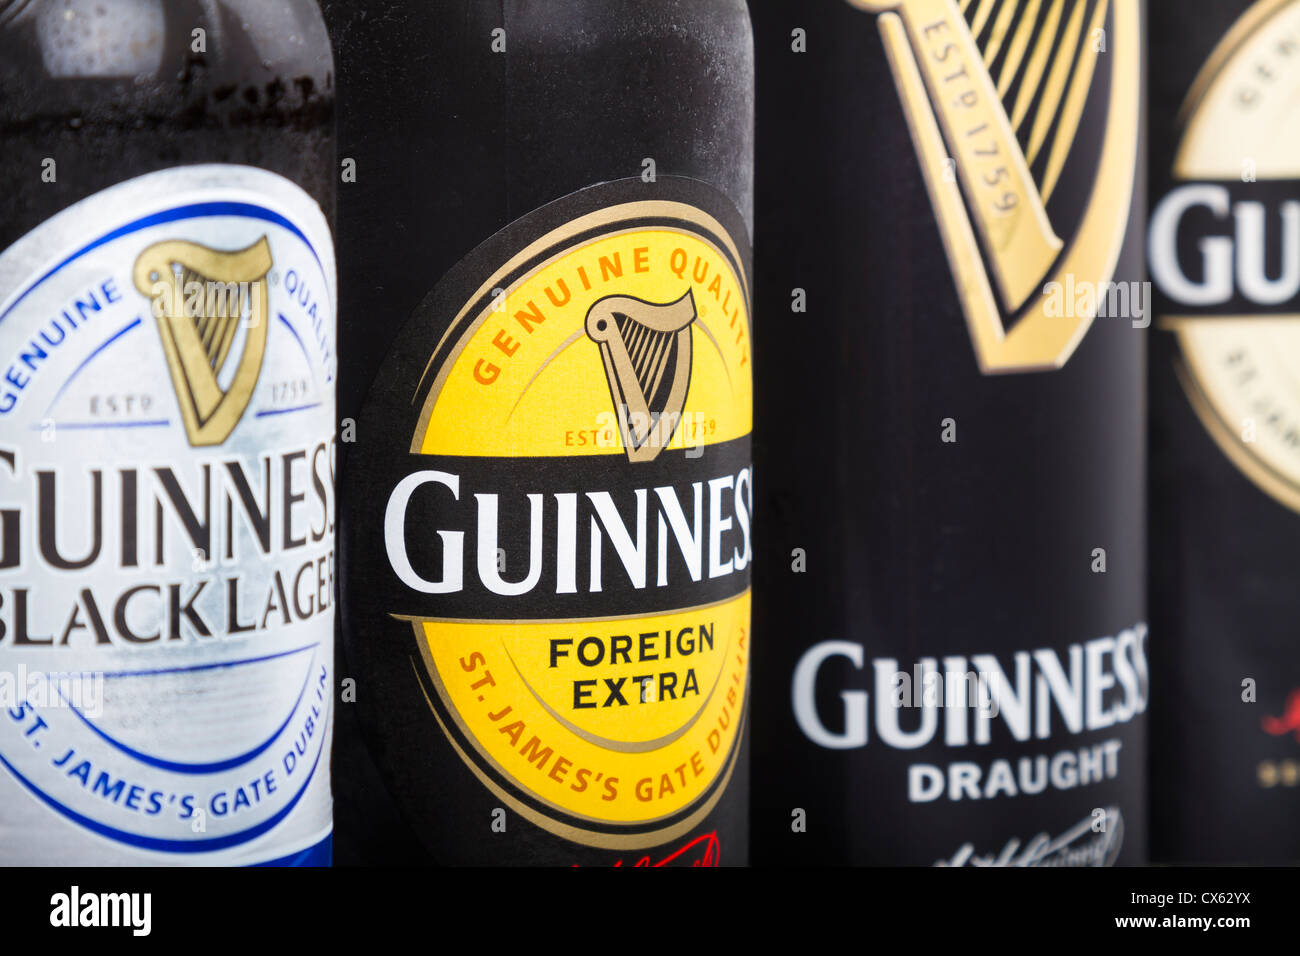 Dublin, Irland - 12. September 2012. Dies ist ein Produkt Studioaufnahme von Guinness Stout/Lager in Irland hergestellt. Vier verschiedene Stockfoto